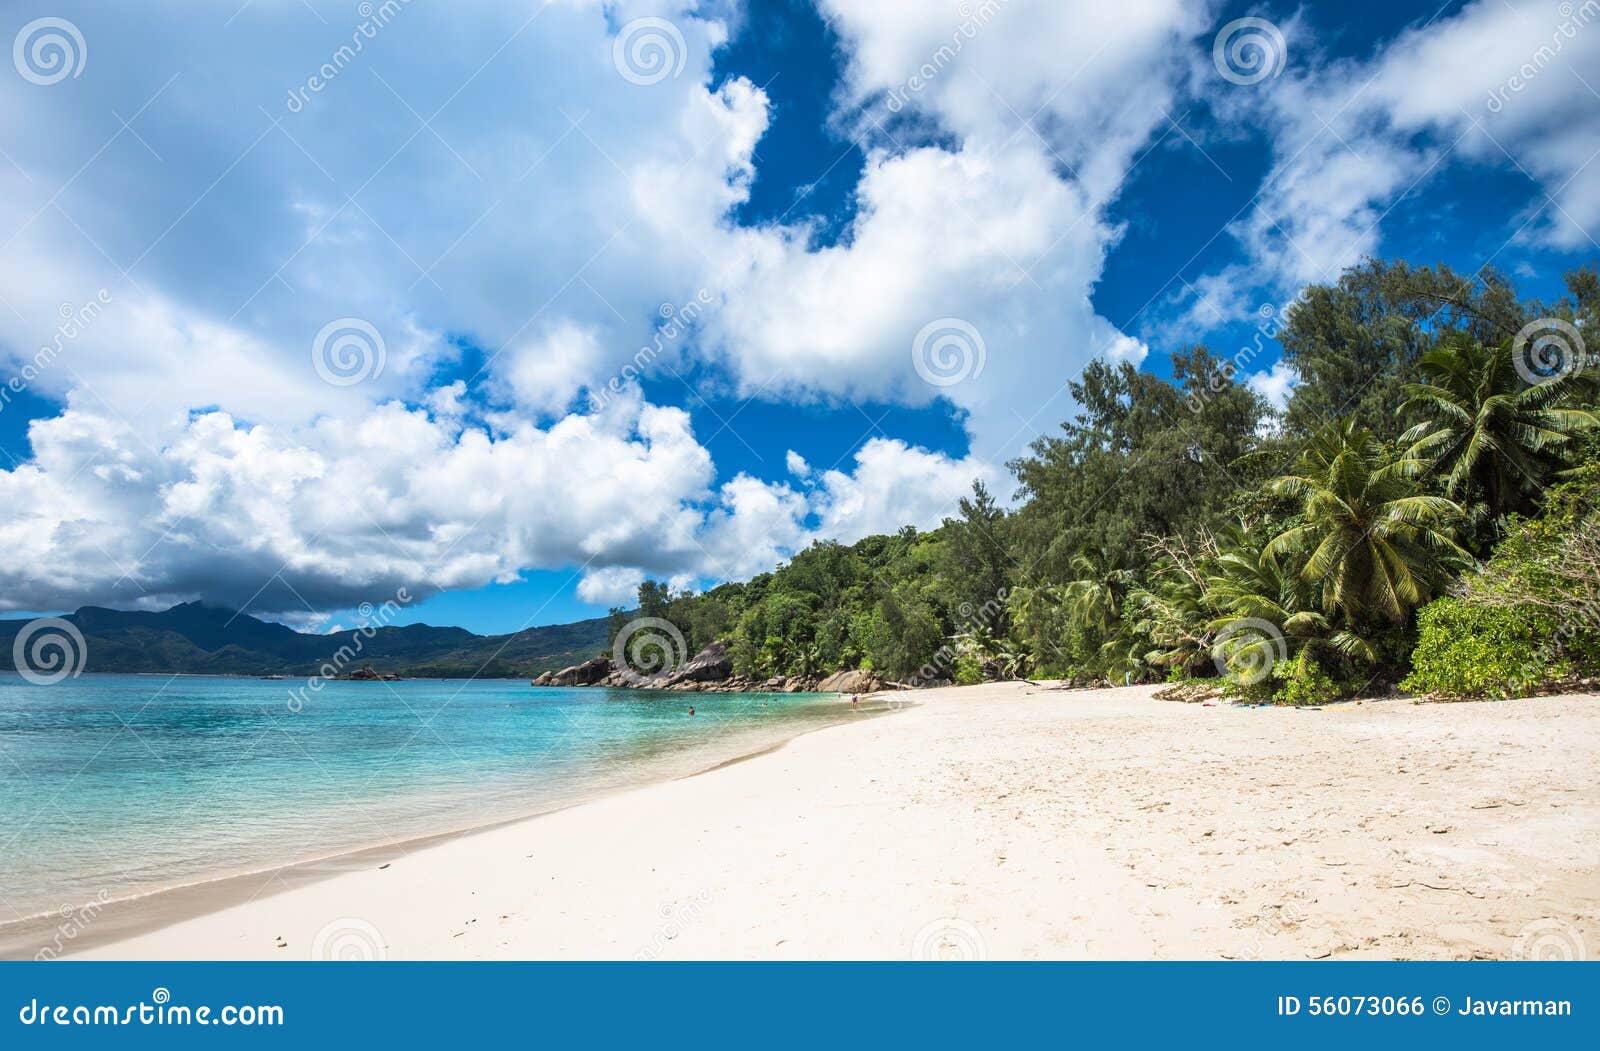 Anse Soleil perfect tropical beach, Mahe island, Seychelles